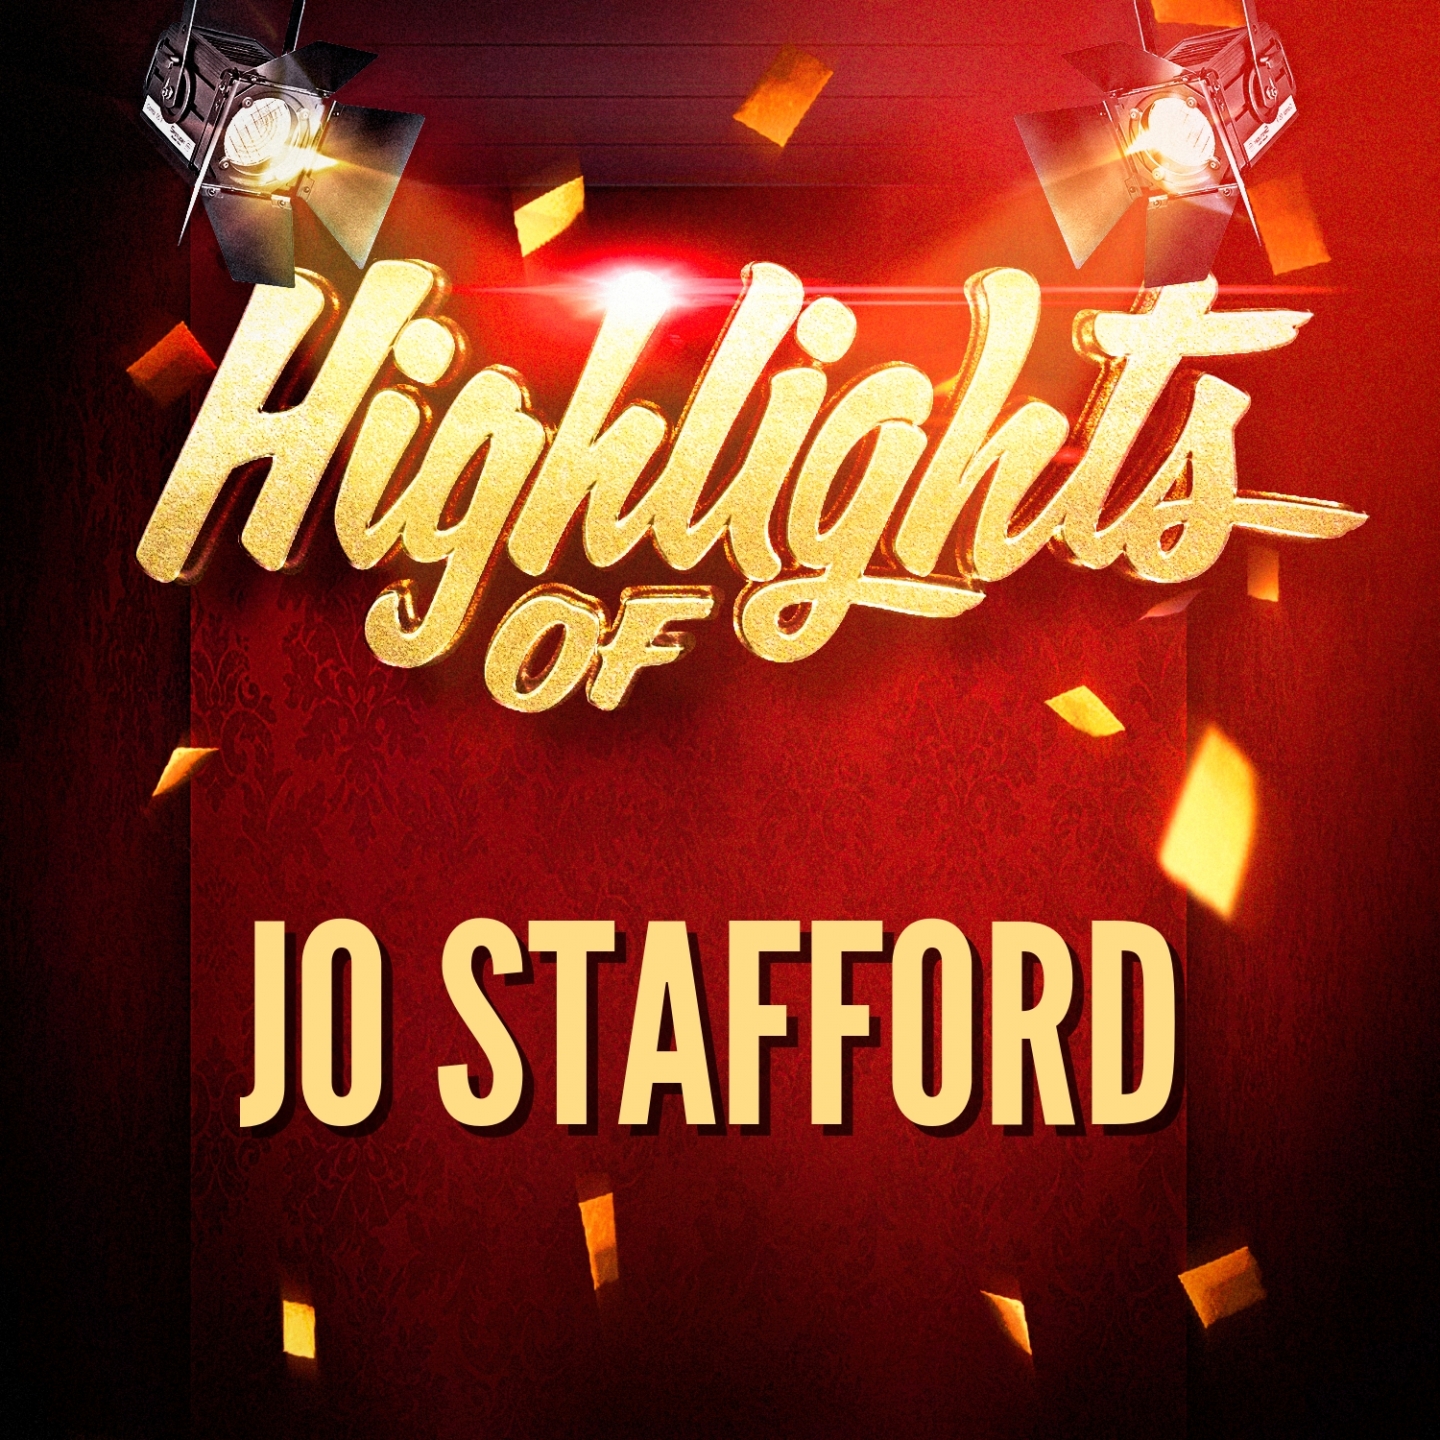 Highlights of Jo Stafford